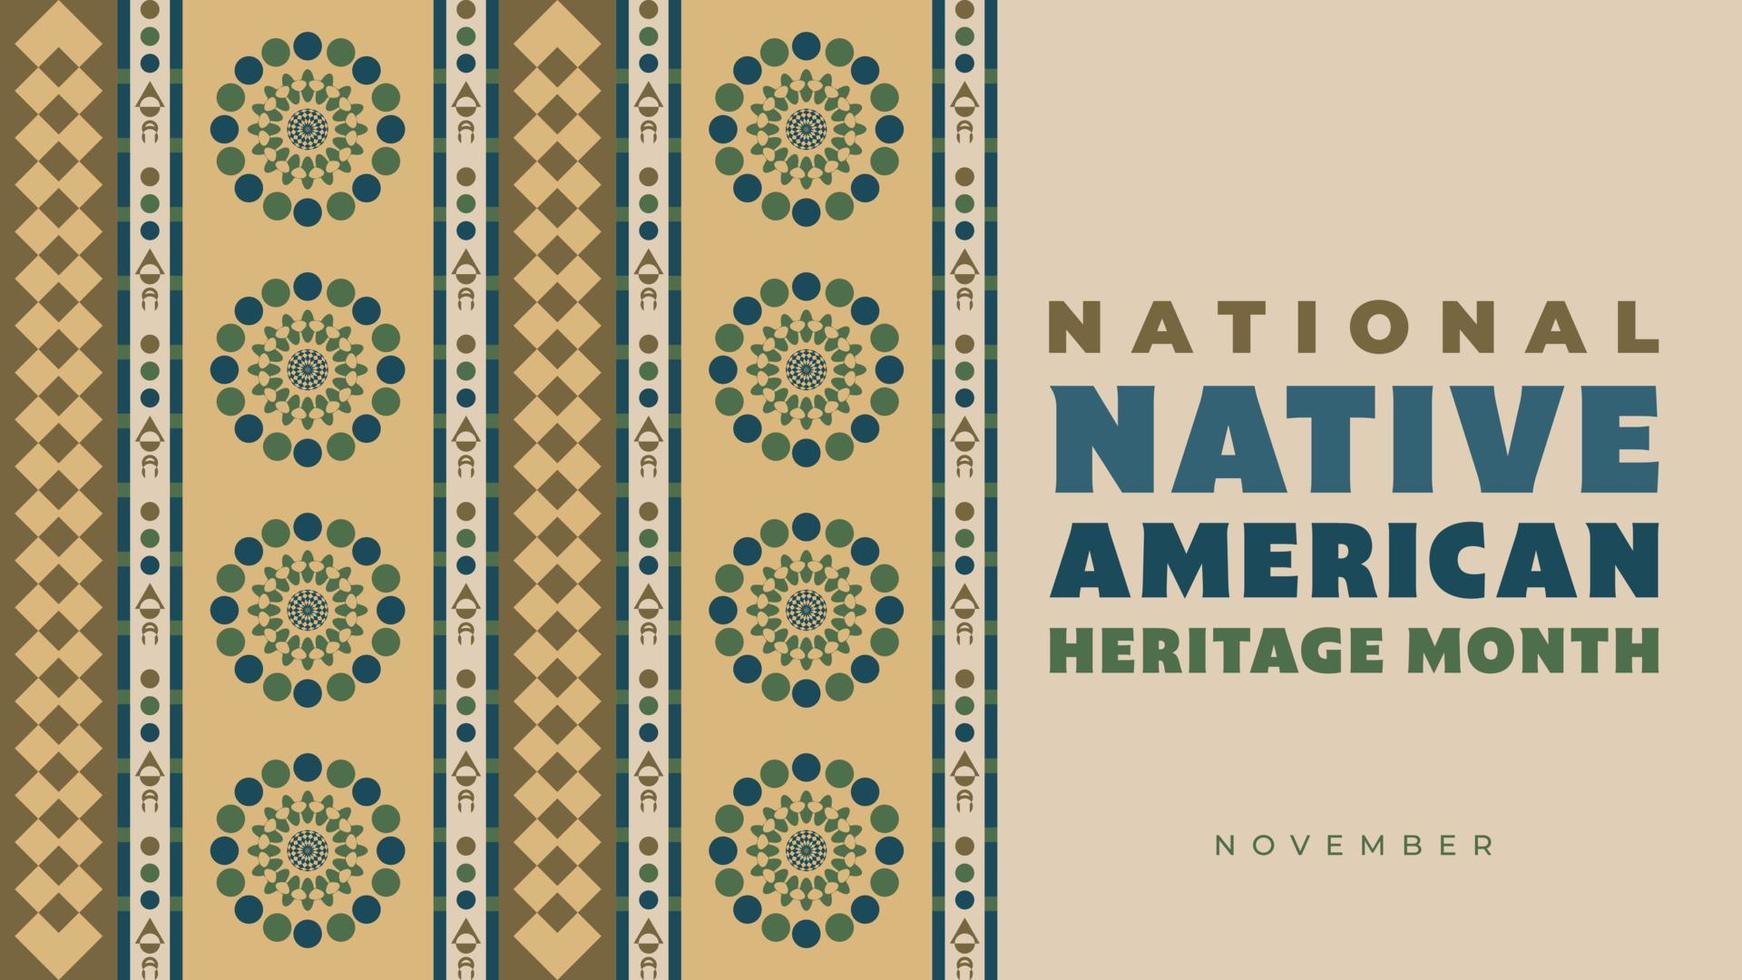 mes de la herencia nativa americana. diseño de fondo con adornos abstractos que celebran a los indios nativos en América. vector